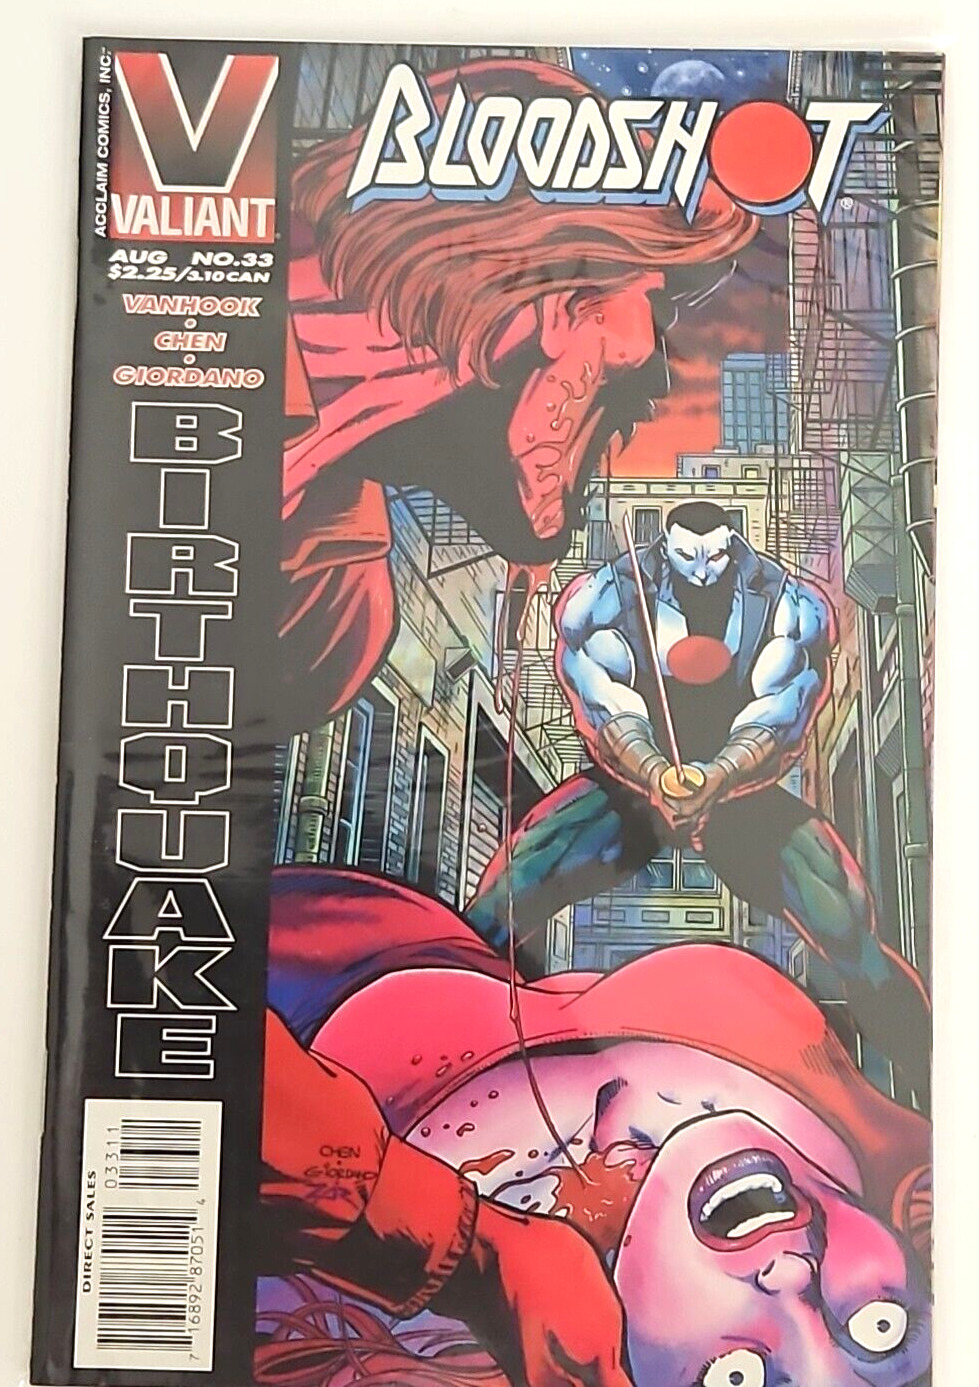 Bloodshot #33 Aug 1995 Valiant Comic Sleeved Kevin VanHook Art Birthquake Mature